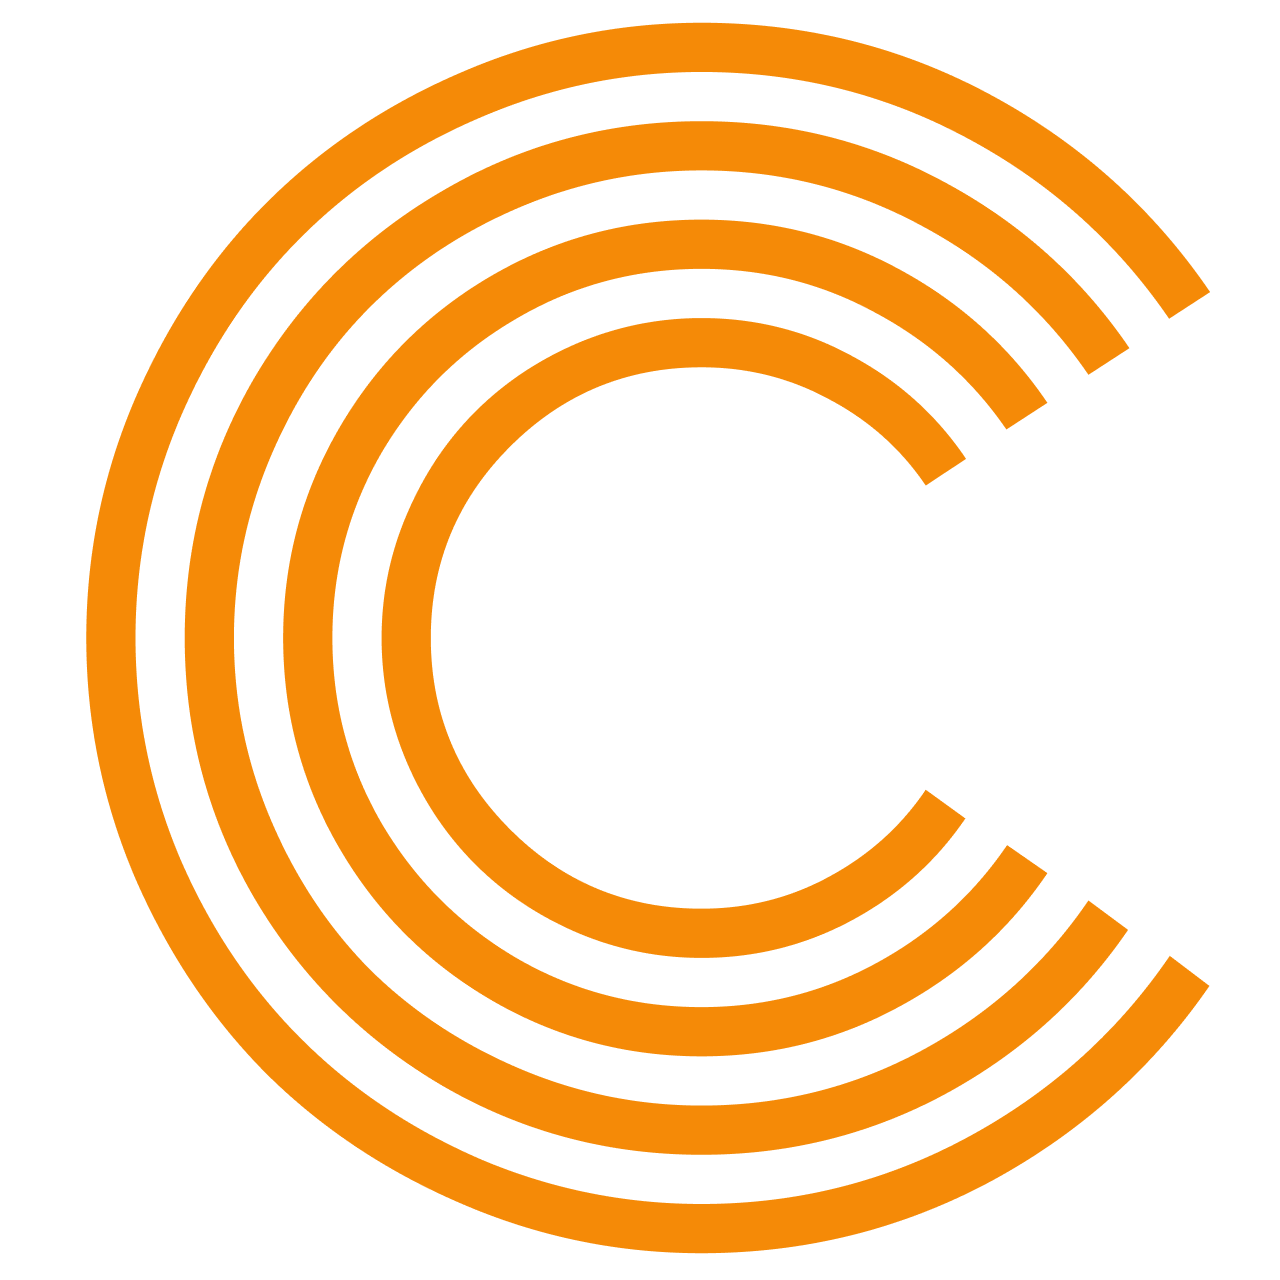 CRUDERRA logo